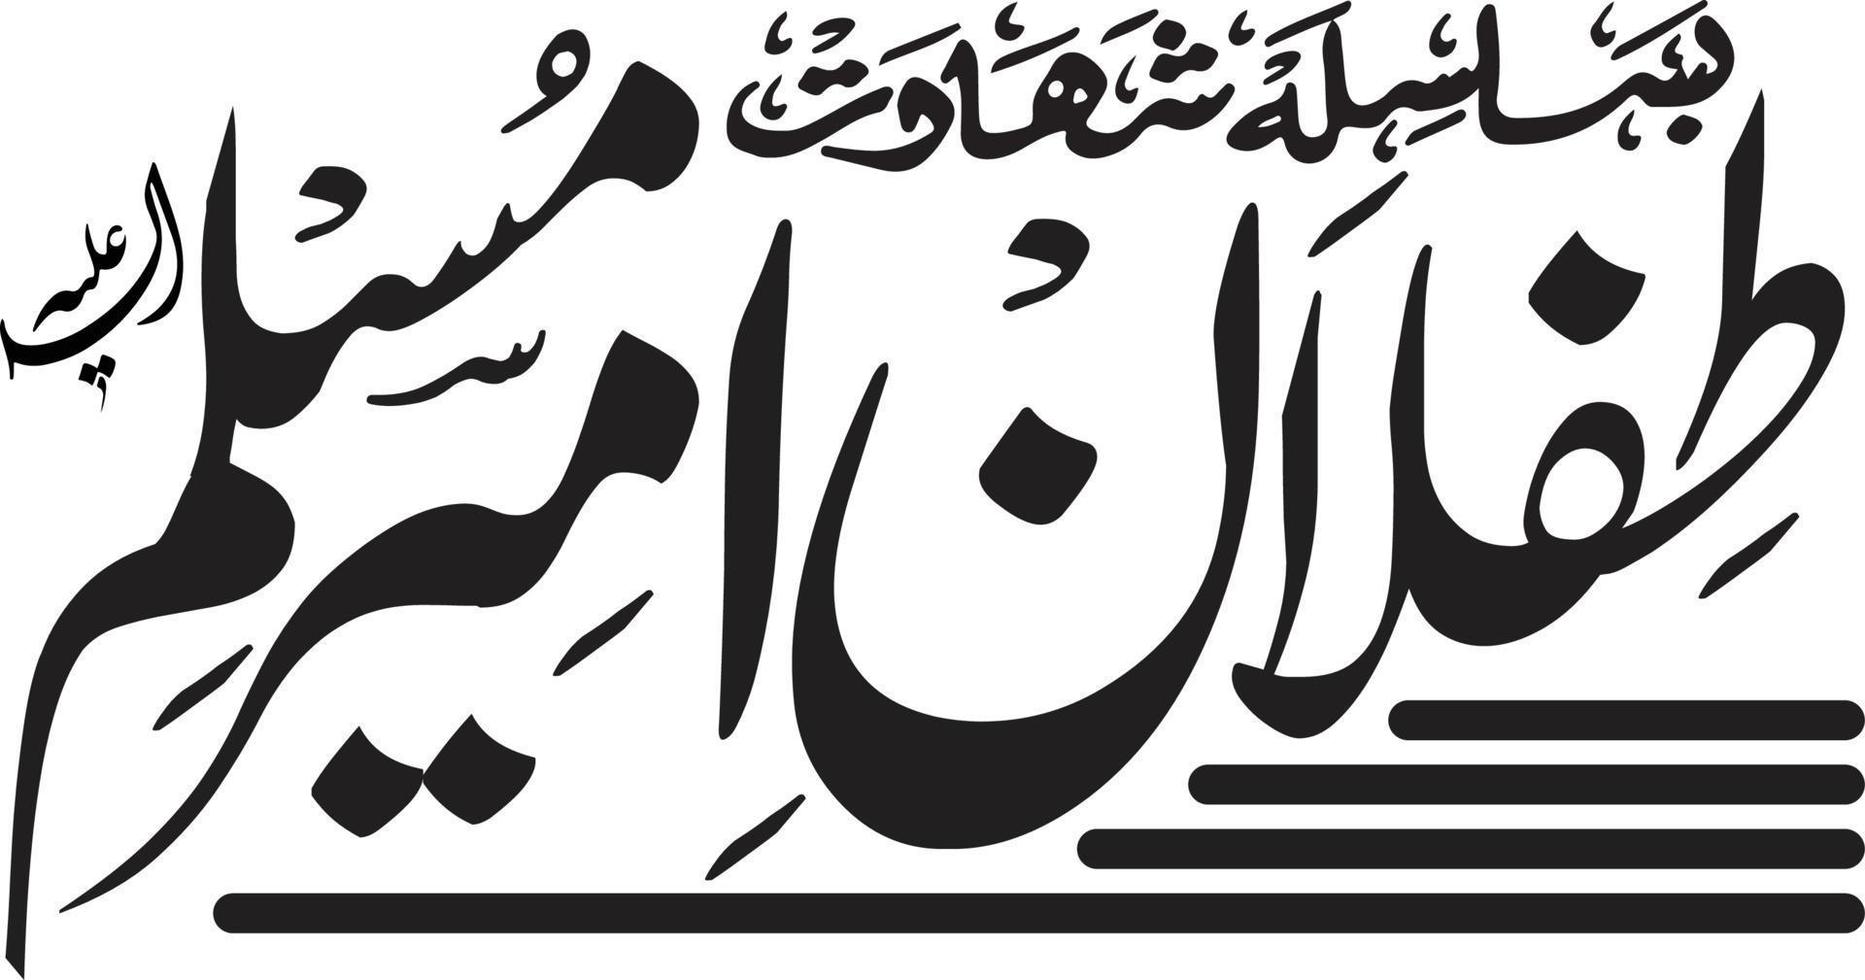 vetor livre de caligrafia urdu islâmica teflan ameer